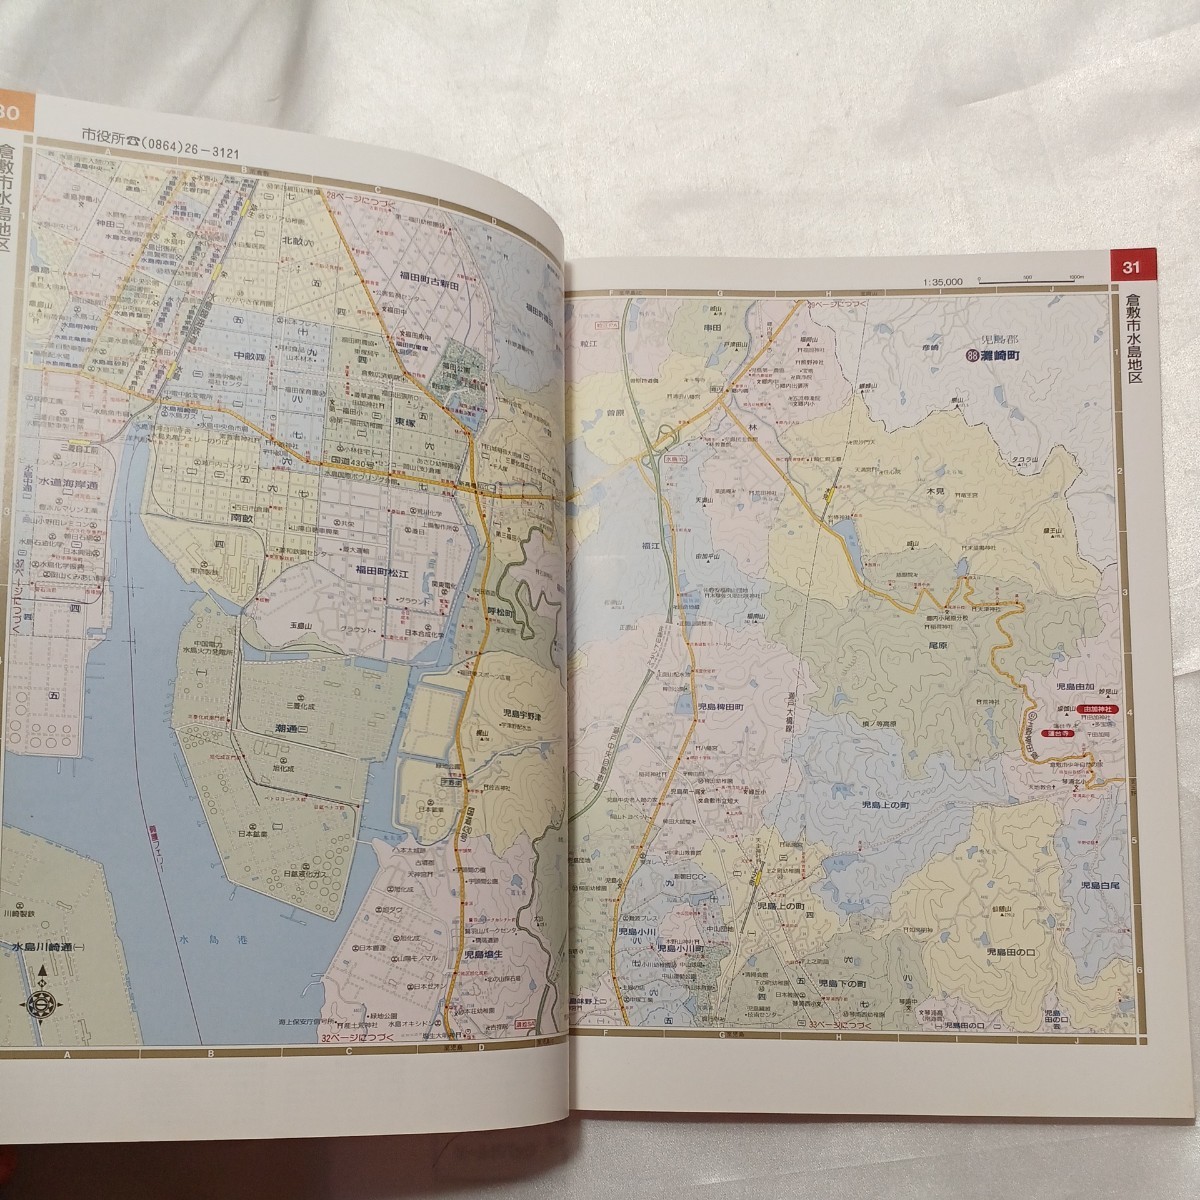 zaa-463! новый Est 37 Okayama префектура город карта - префектура внизу все город главный блок подробный план ( Area карта ). документ фирма (1990 год 1 месяц )